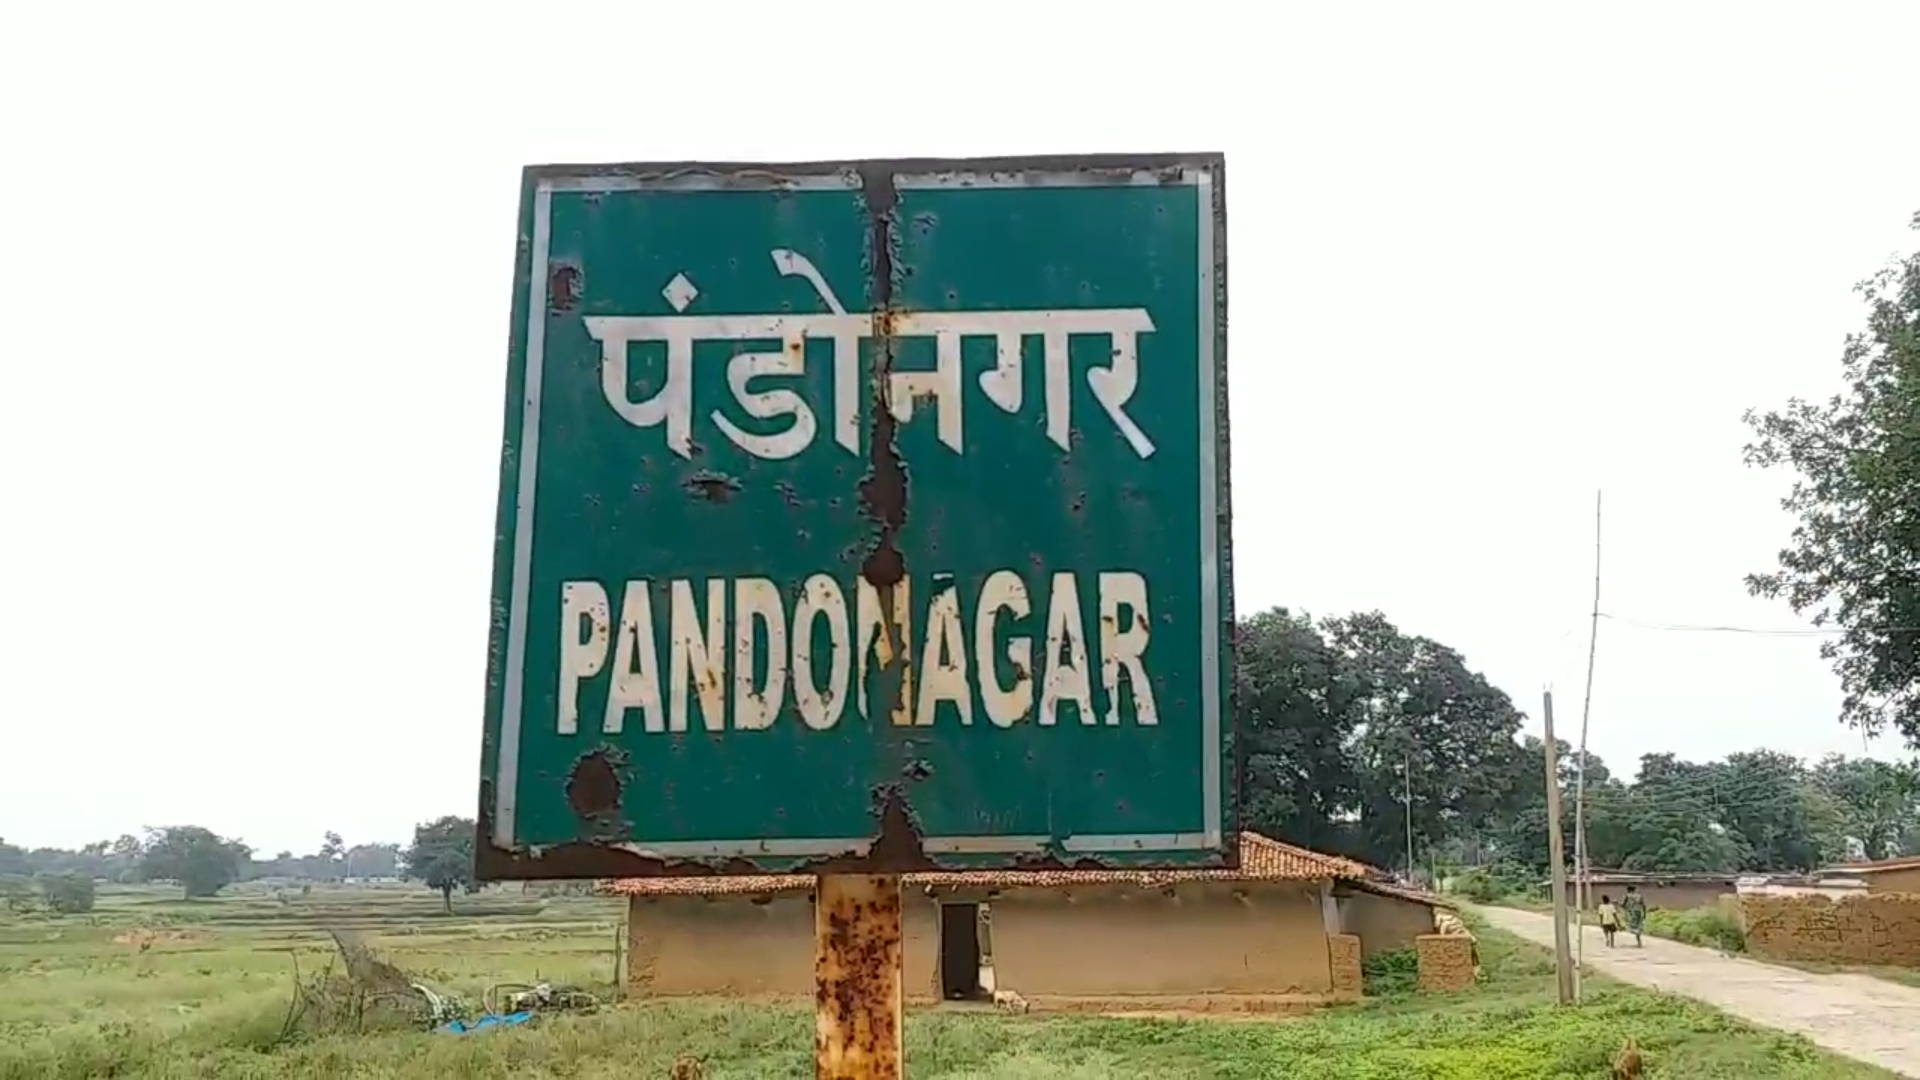 Pando Nagar